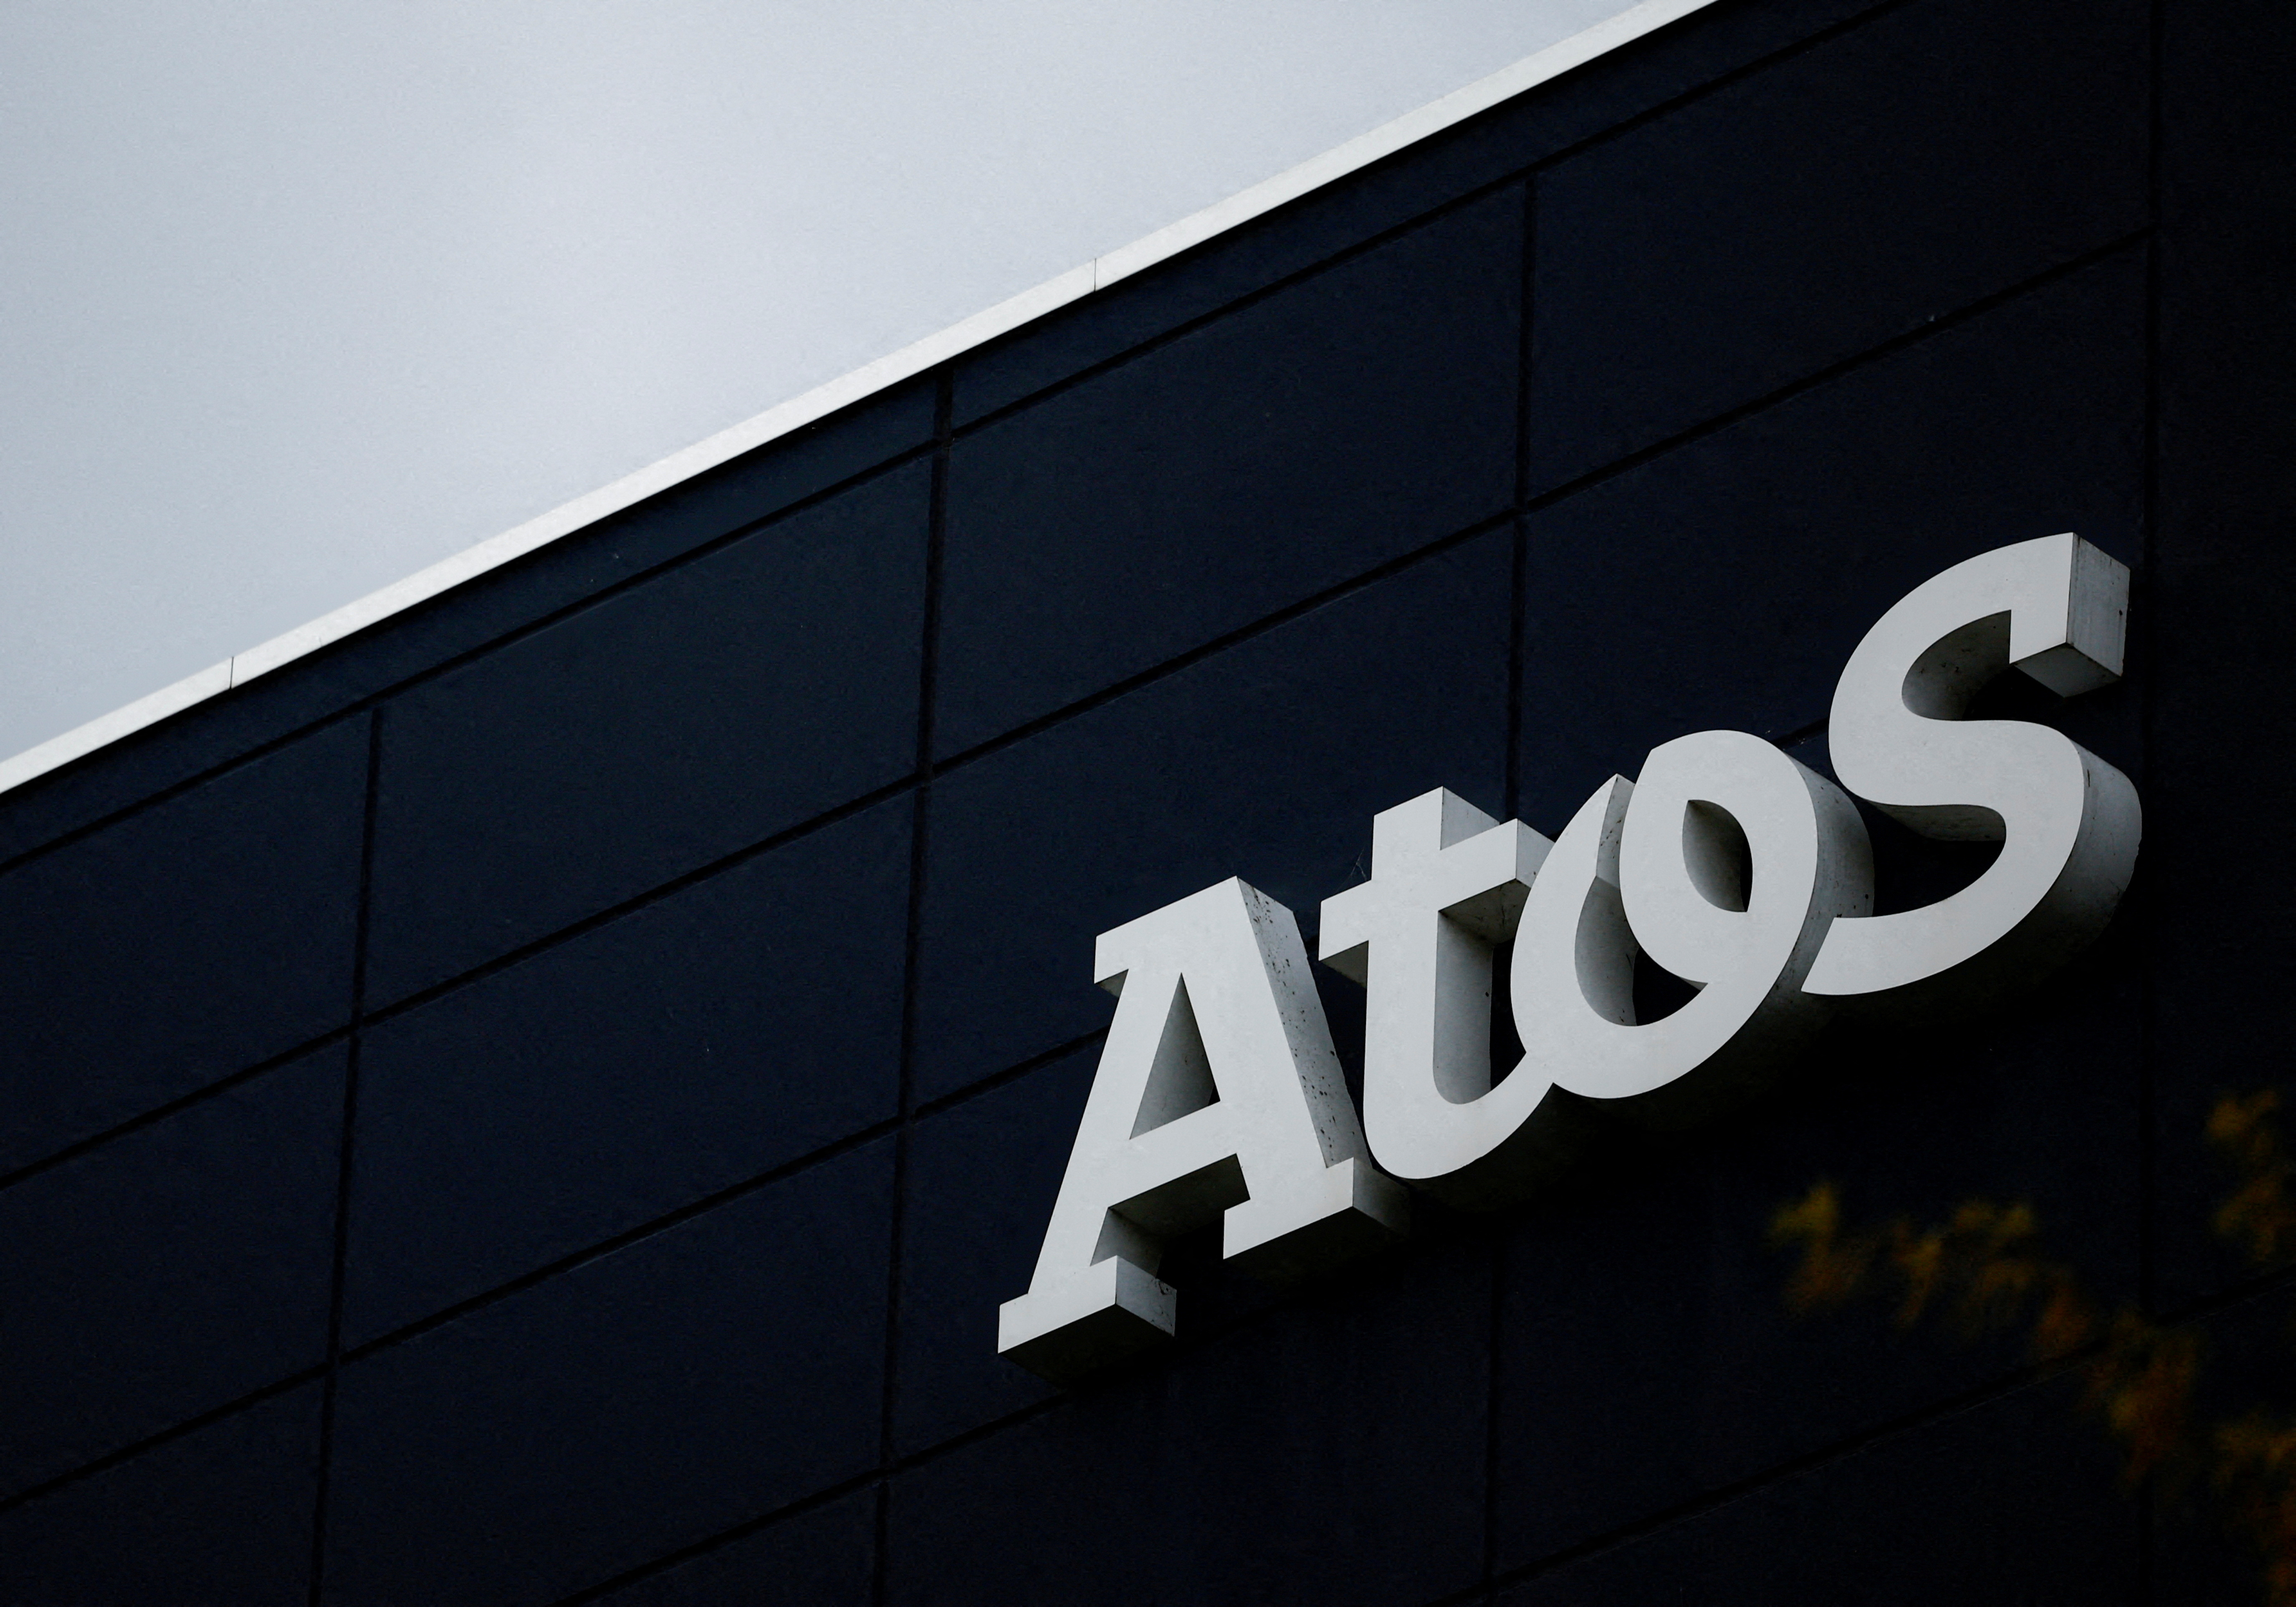 Atos : le conseil d'administration choisit le consortium Onepoint, le milliardaire Kretinsky écarté